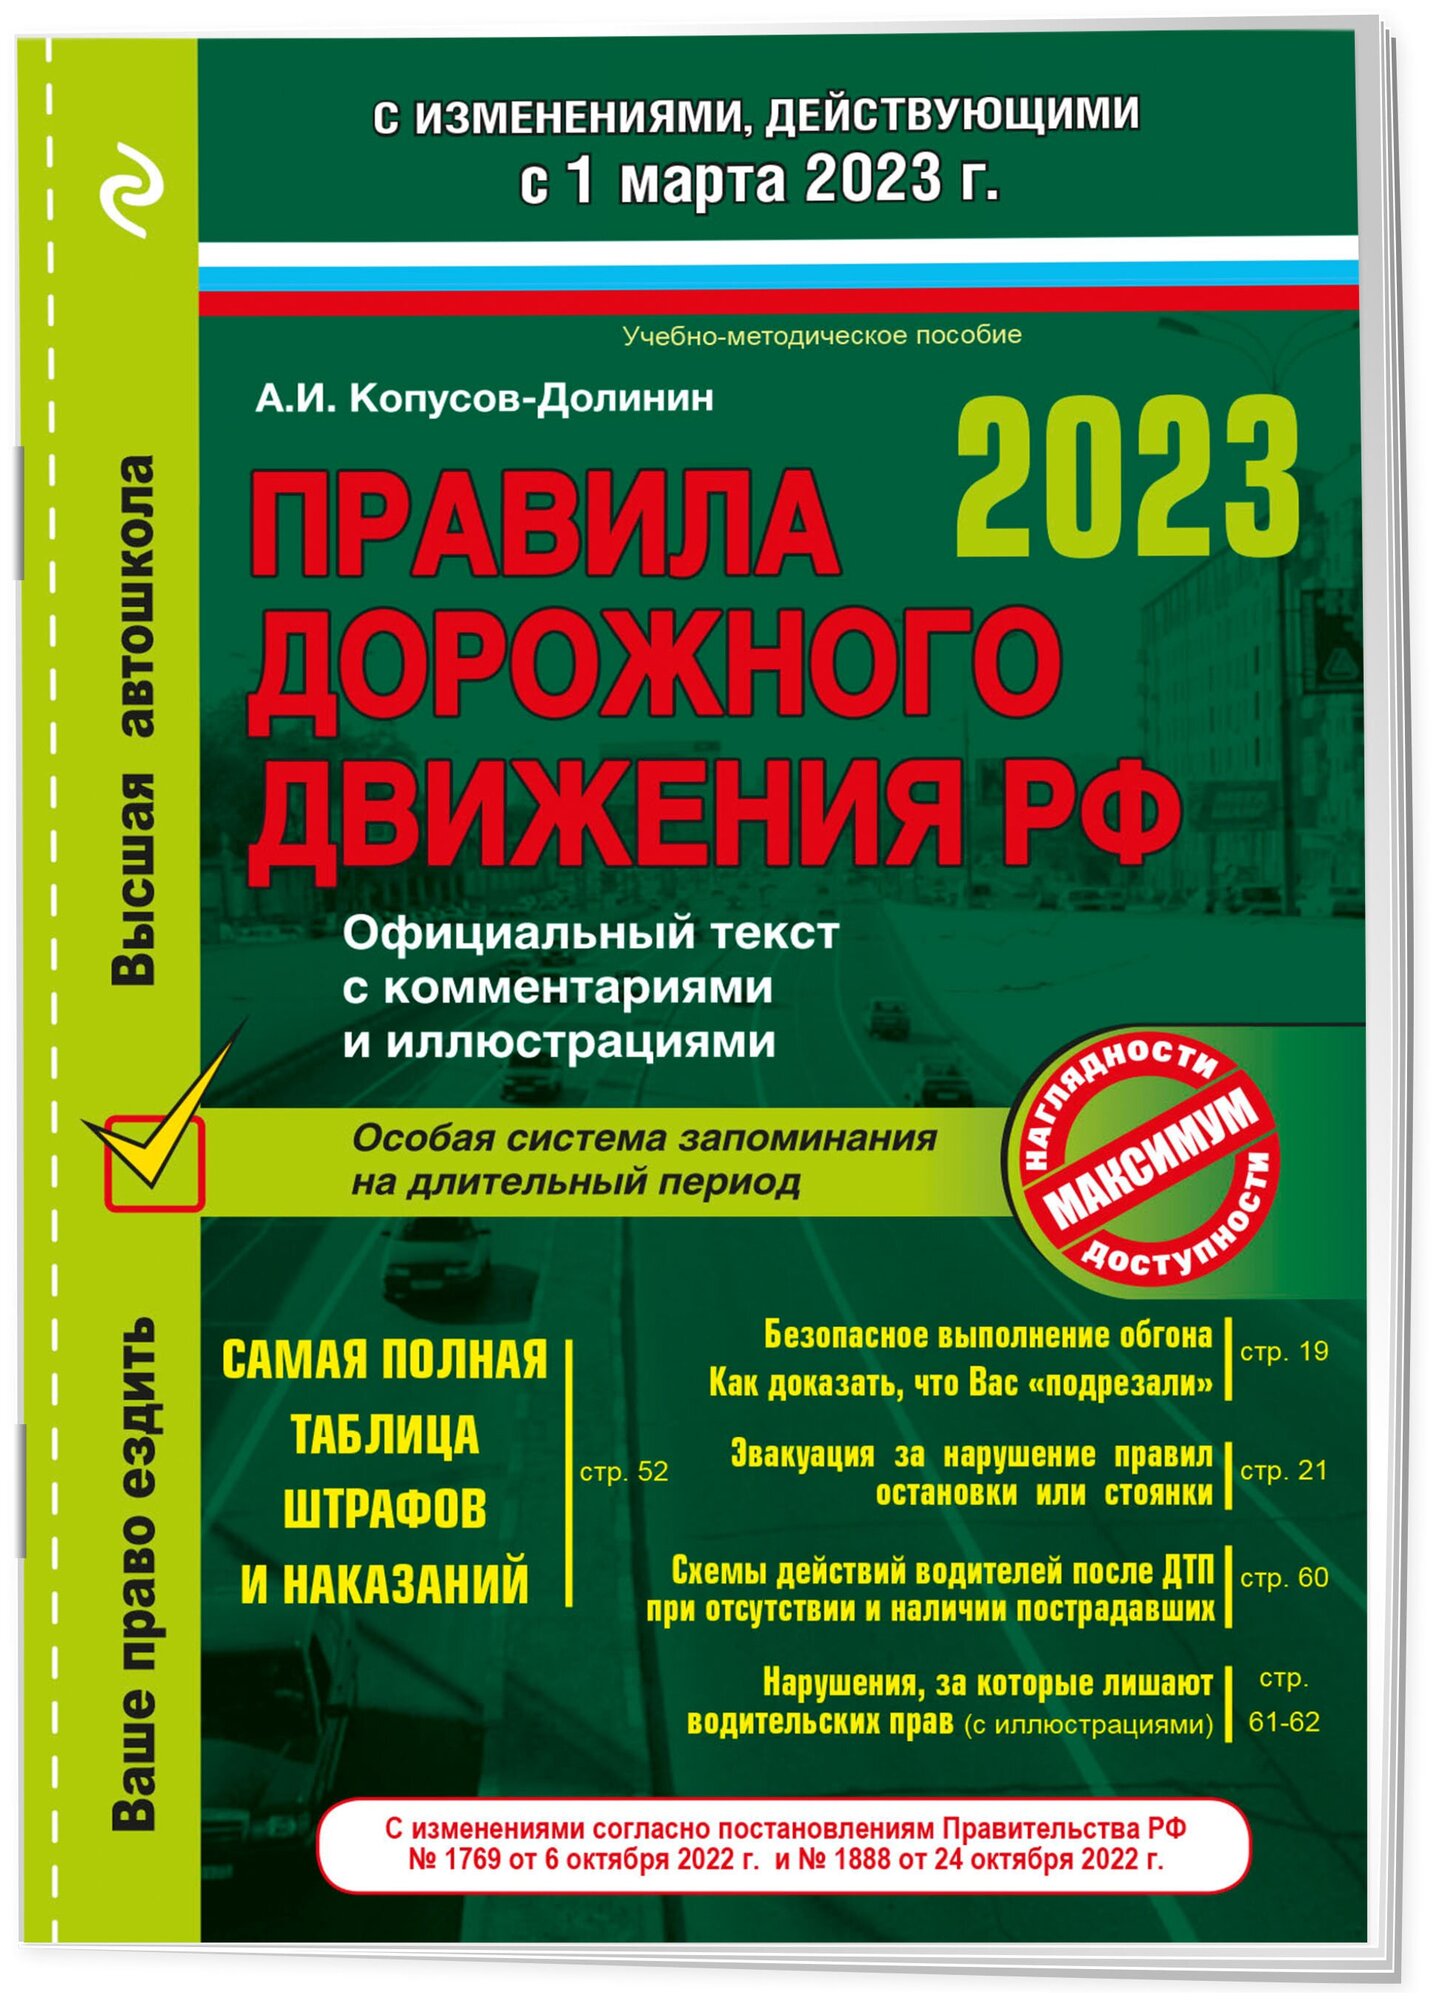 Правила дорожного движения на 1 марта 2023 года. Официальный текст с комментариями и иллюстрациями - фото №1